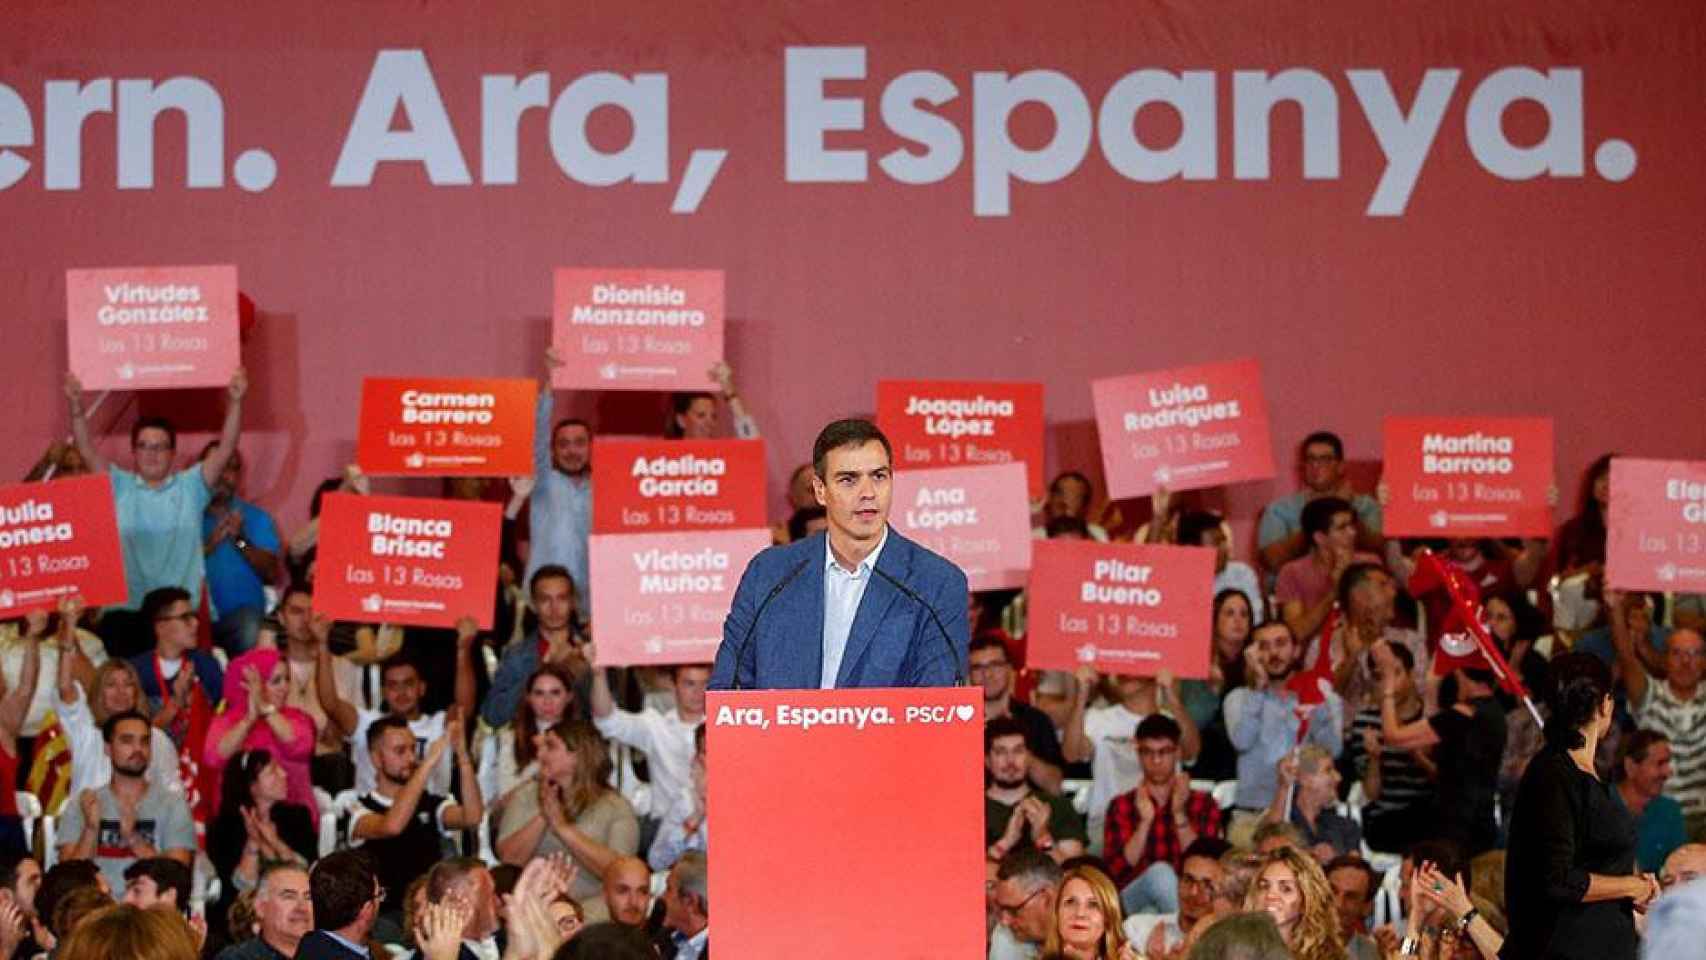 El presidente del Gobierno en funciones, Pedro Sánchez, interviene durante un acto político, este miércoles en Barcelona / EFE